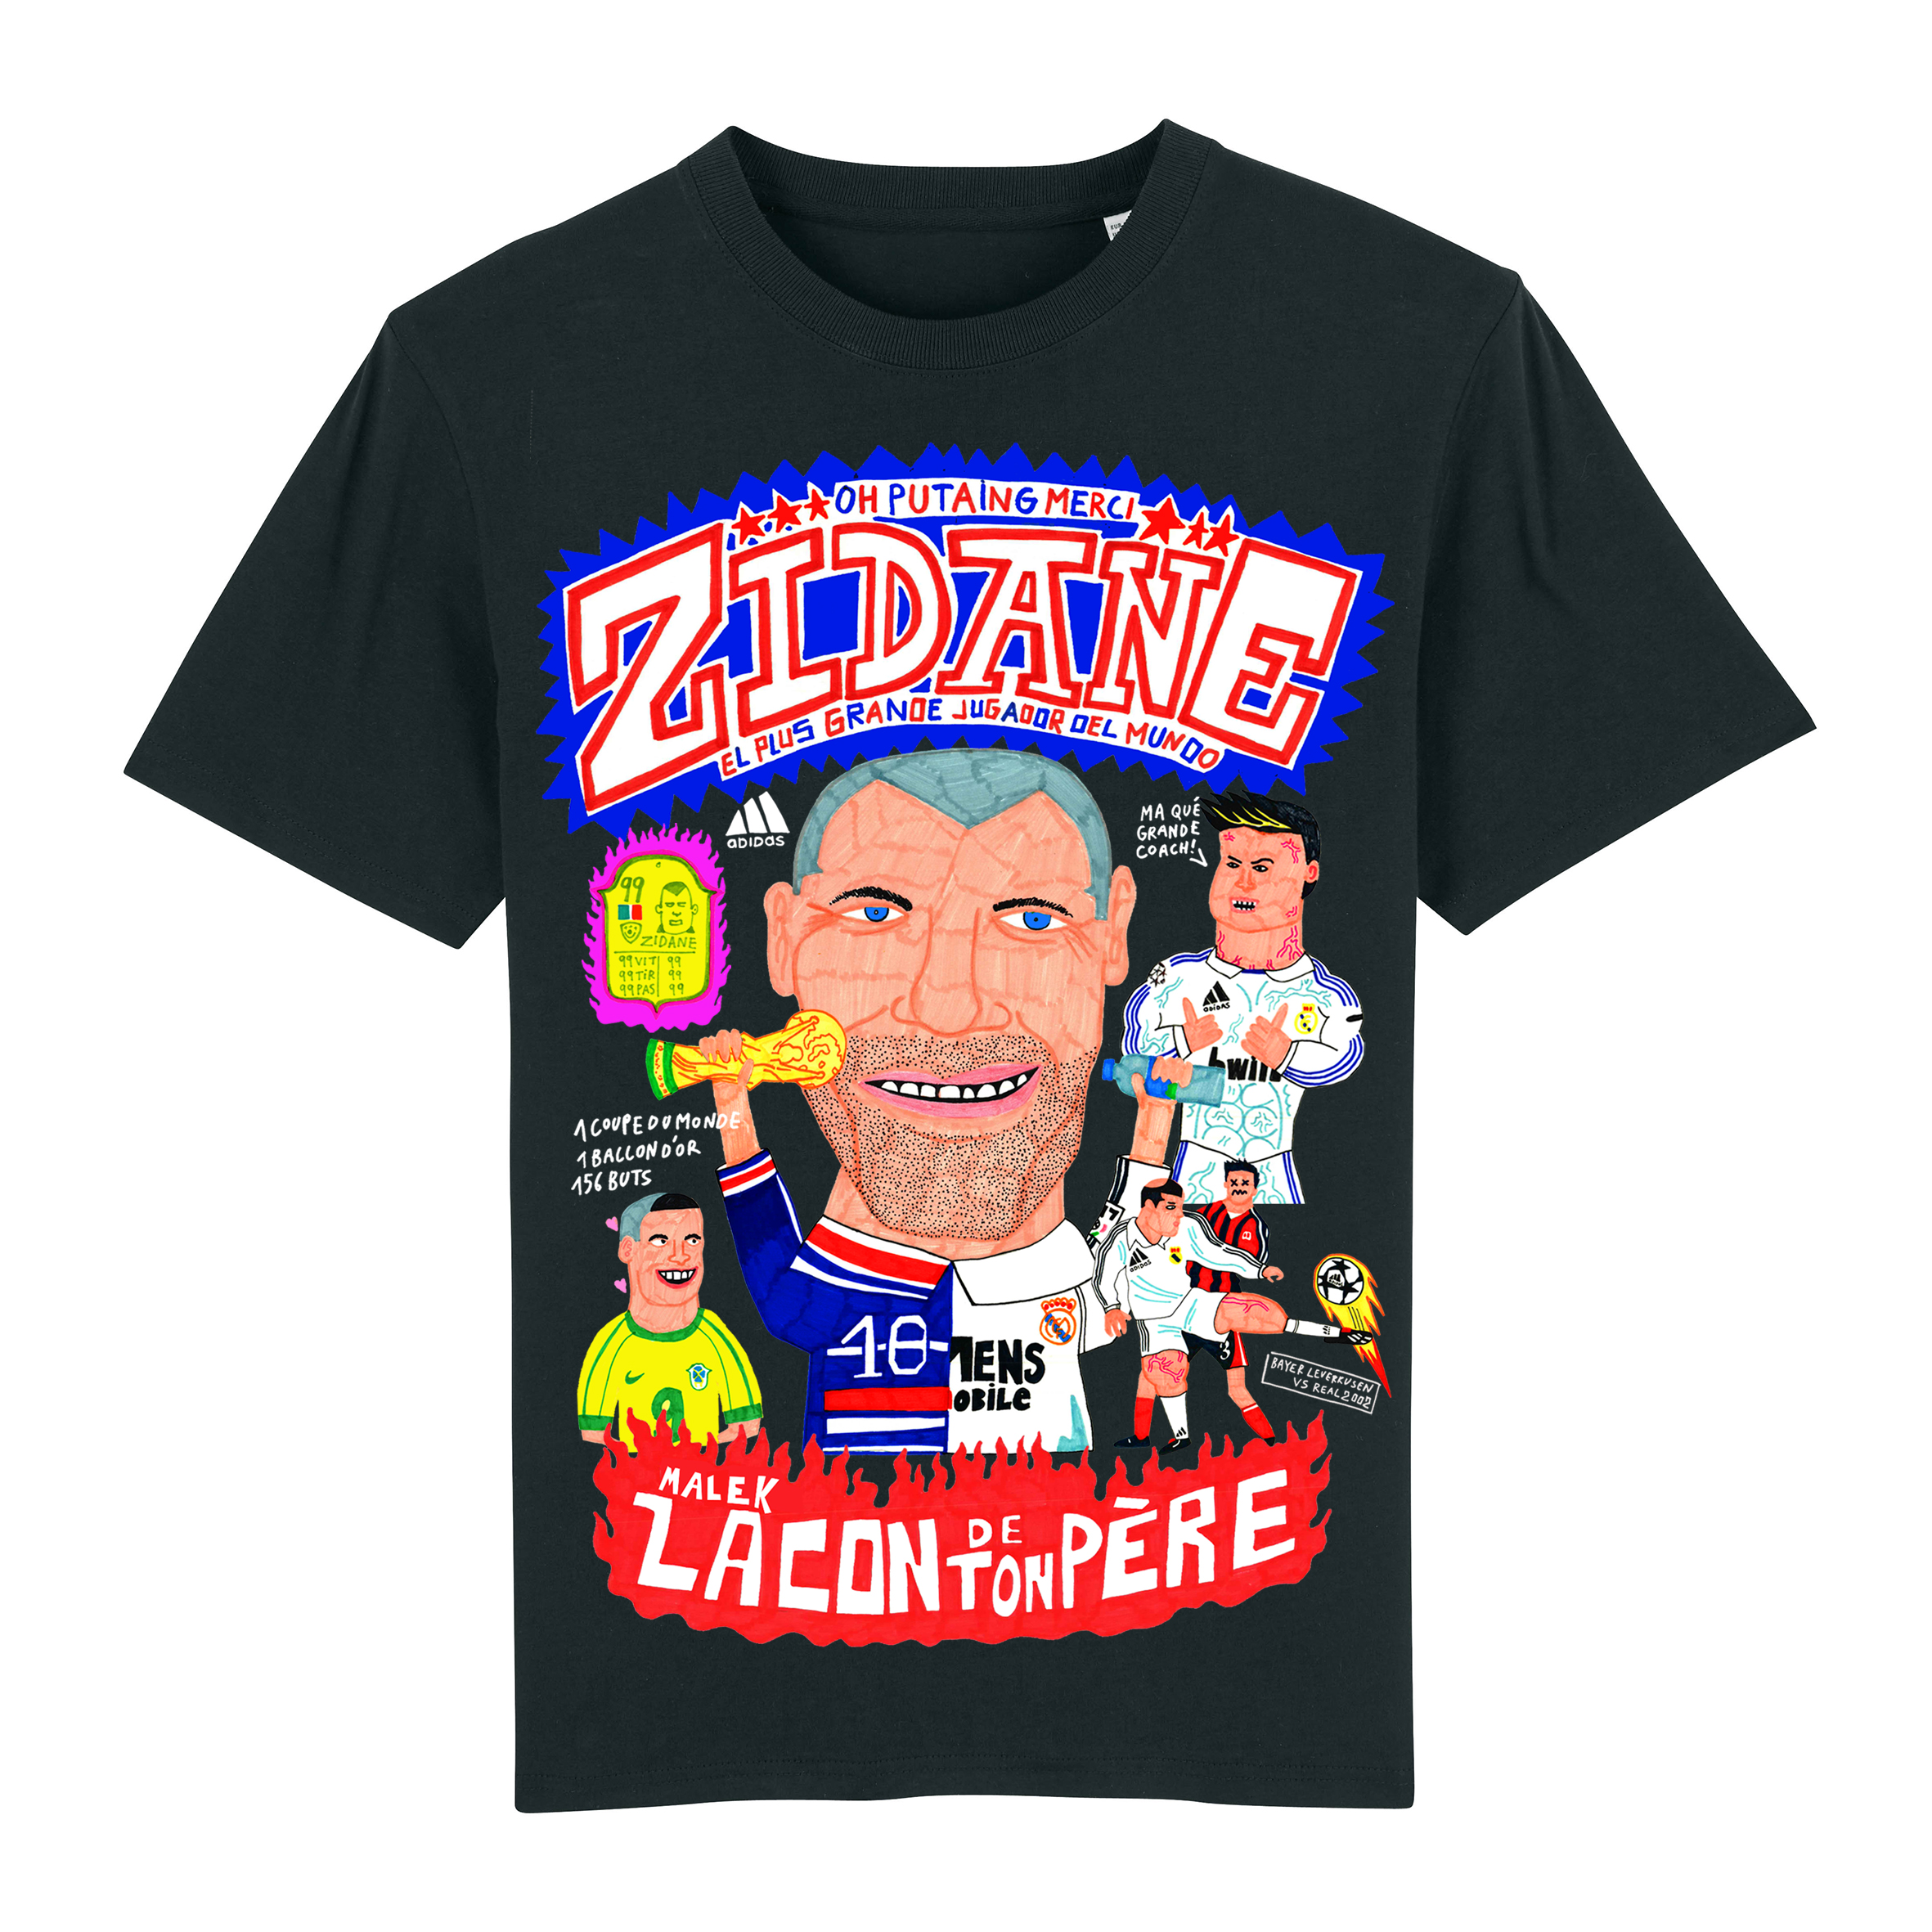 Zidane shirt